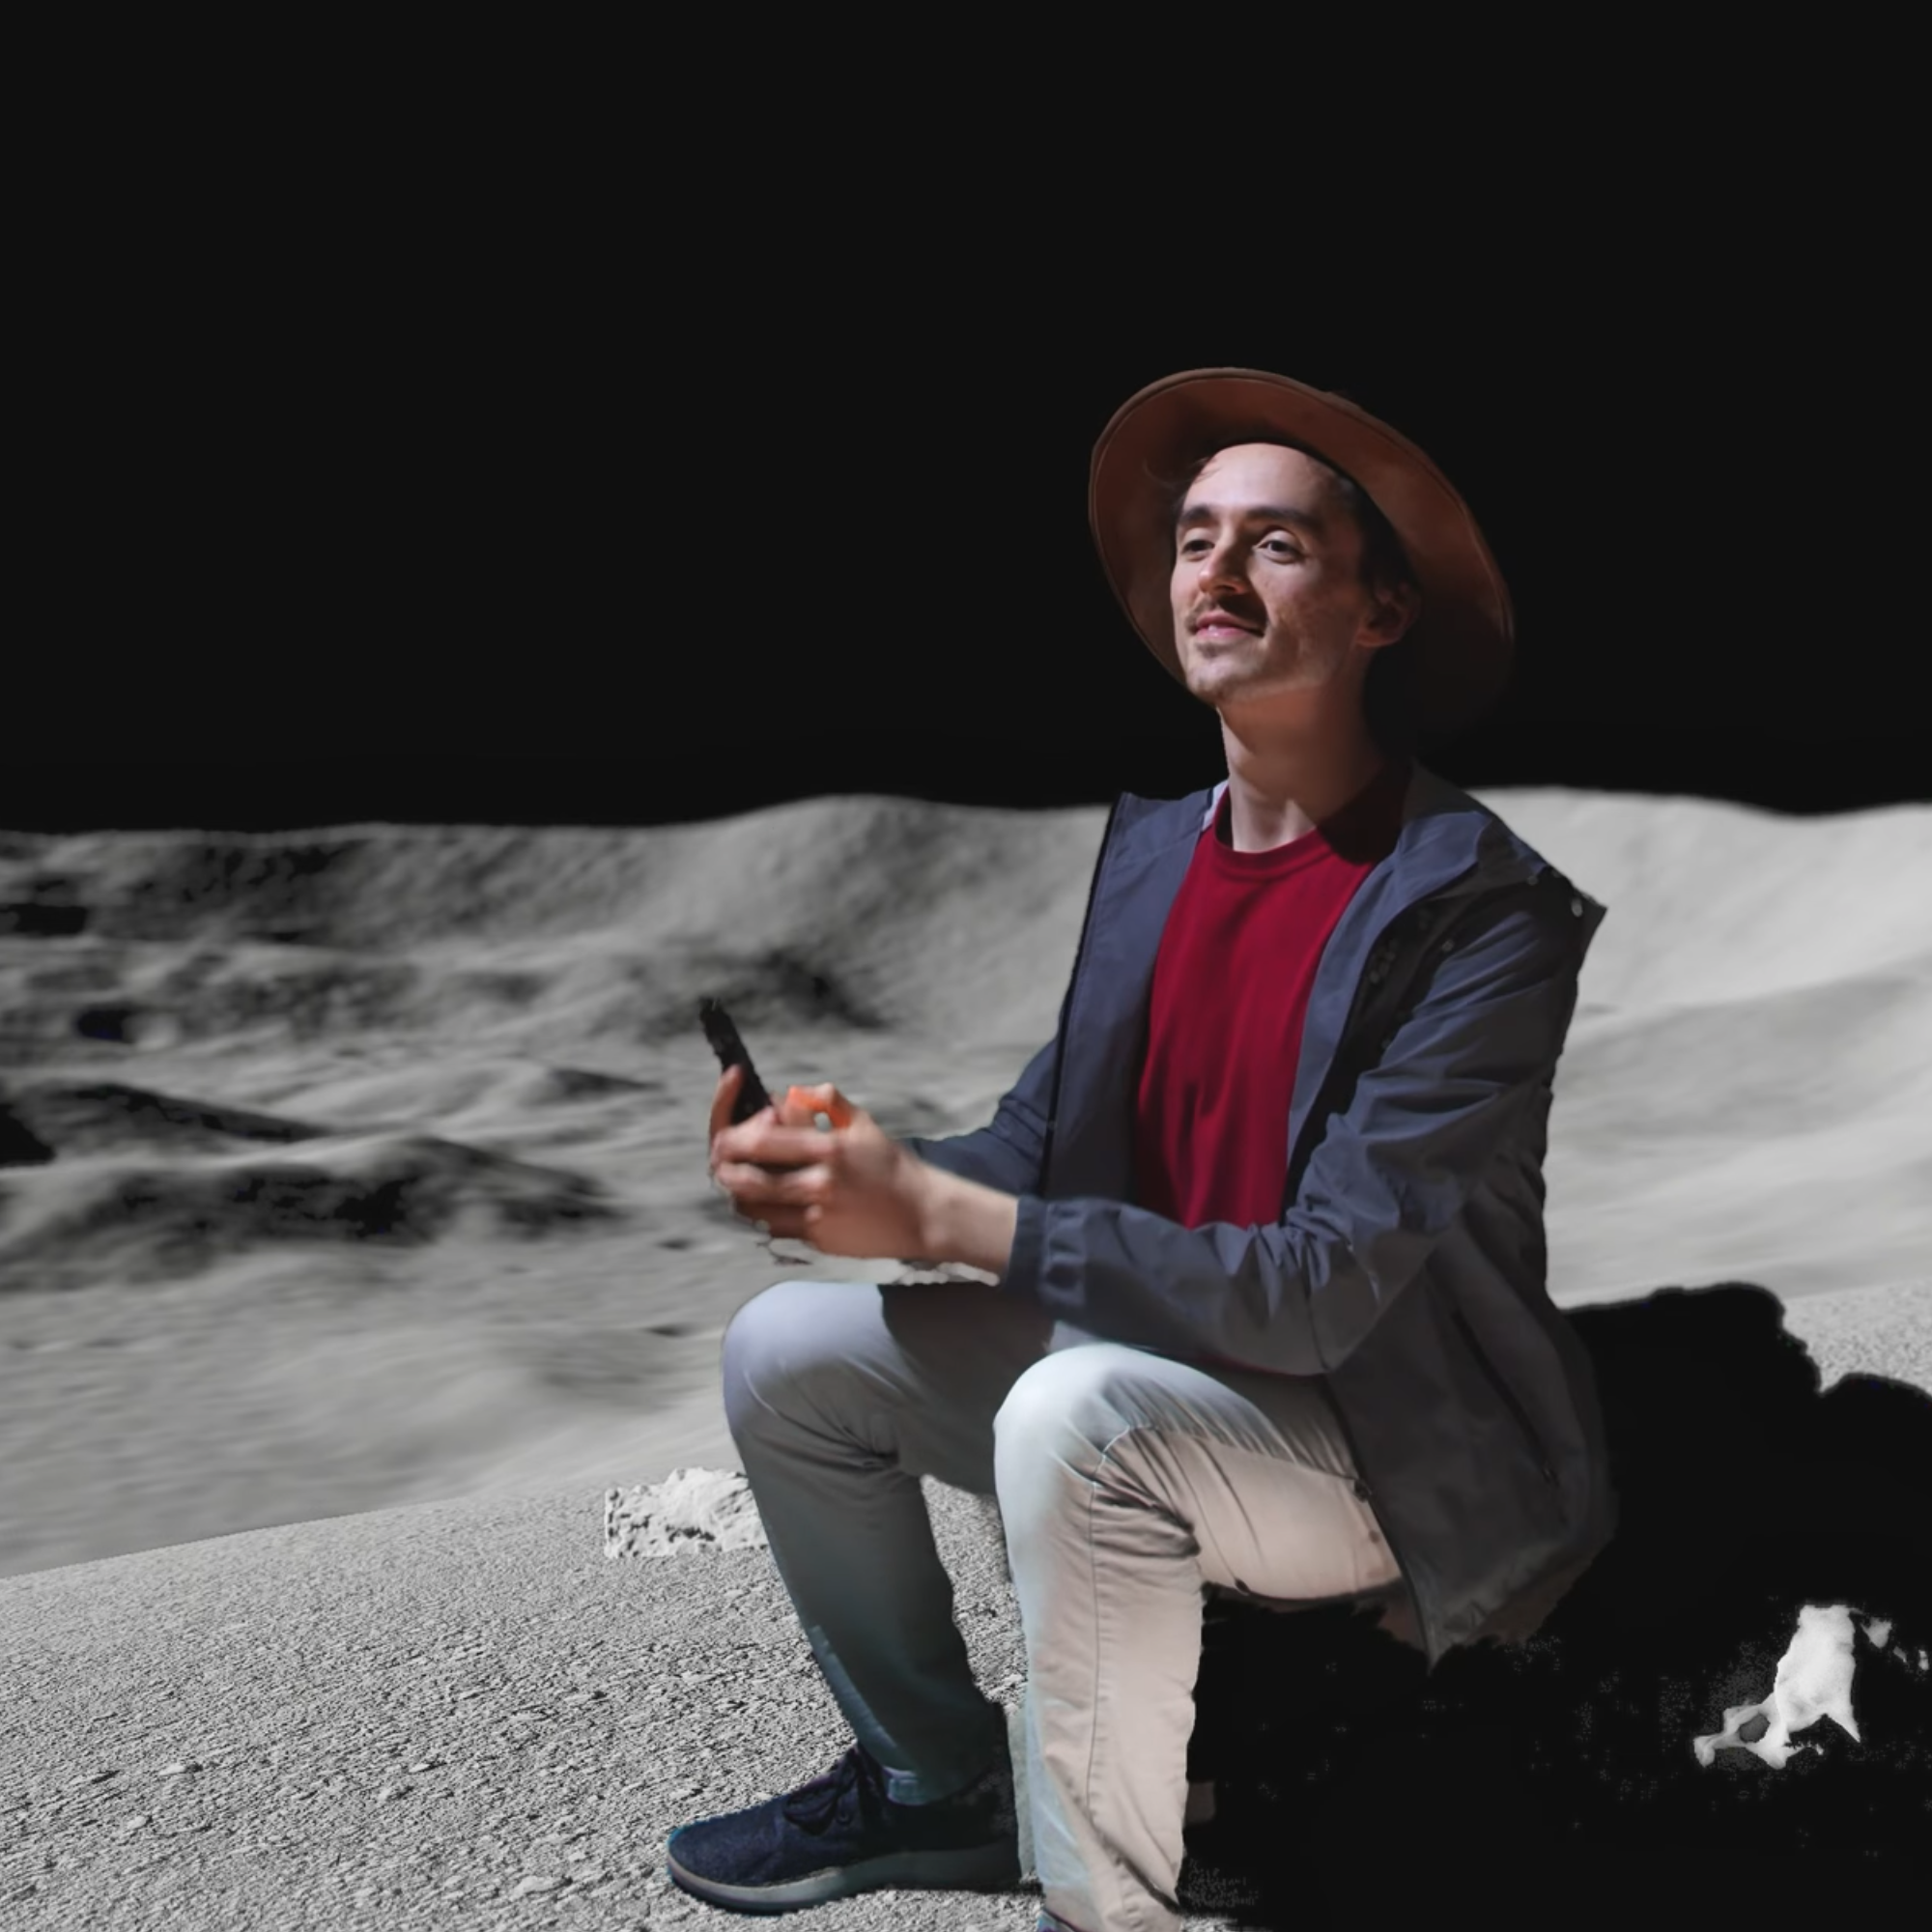 Chlillin on the moon